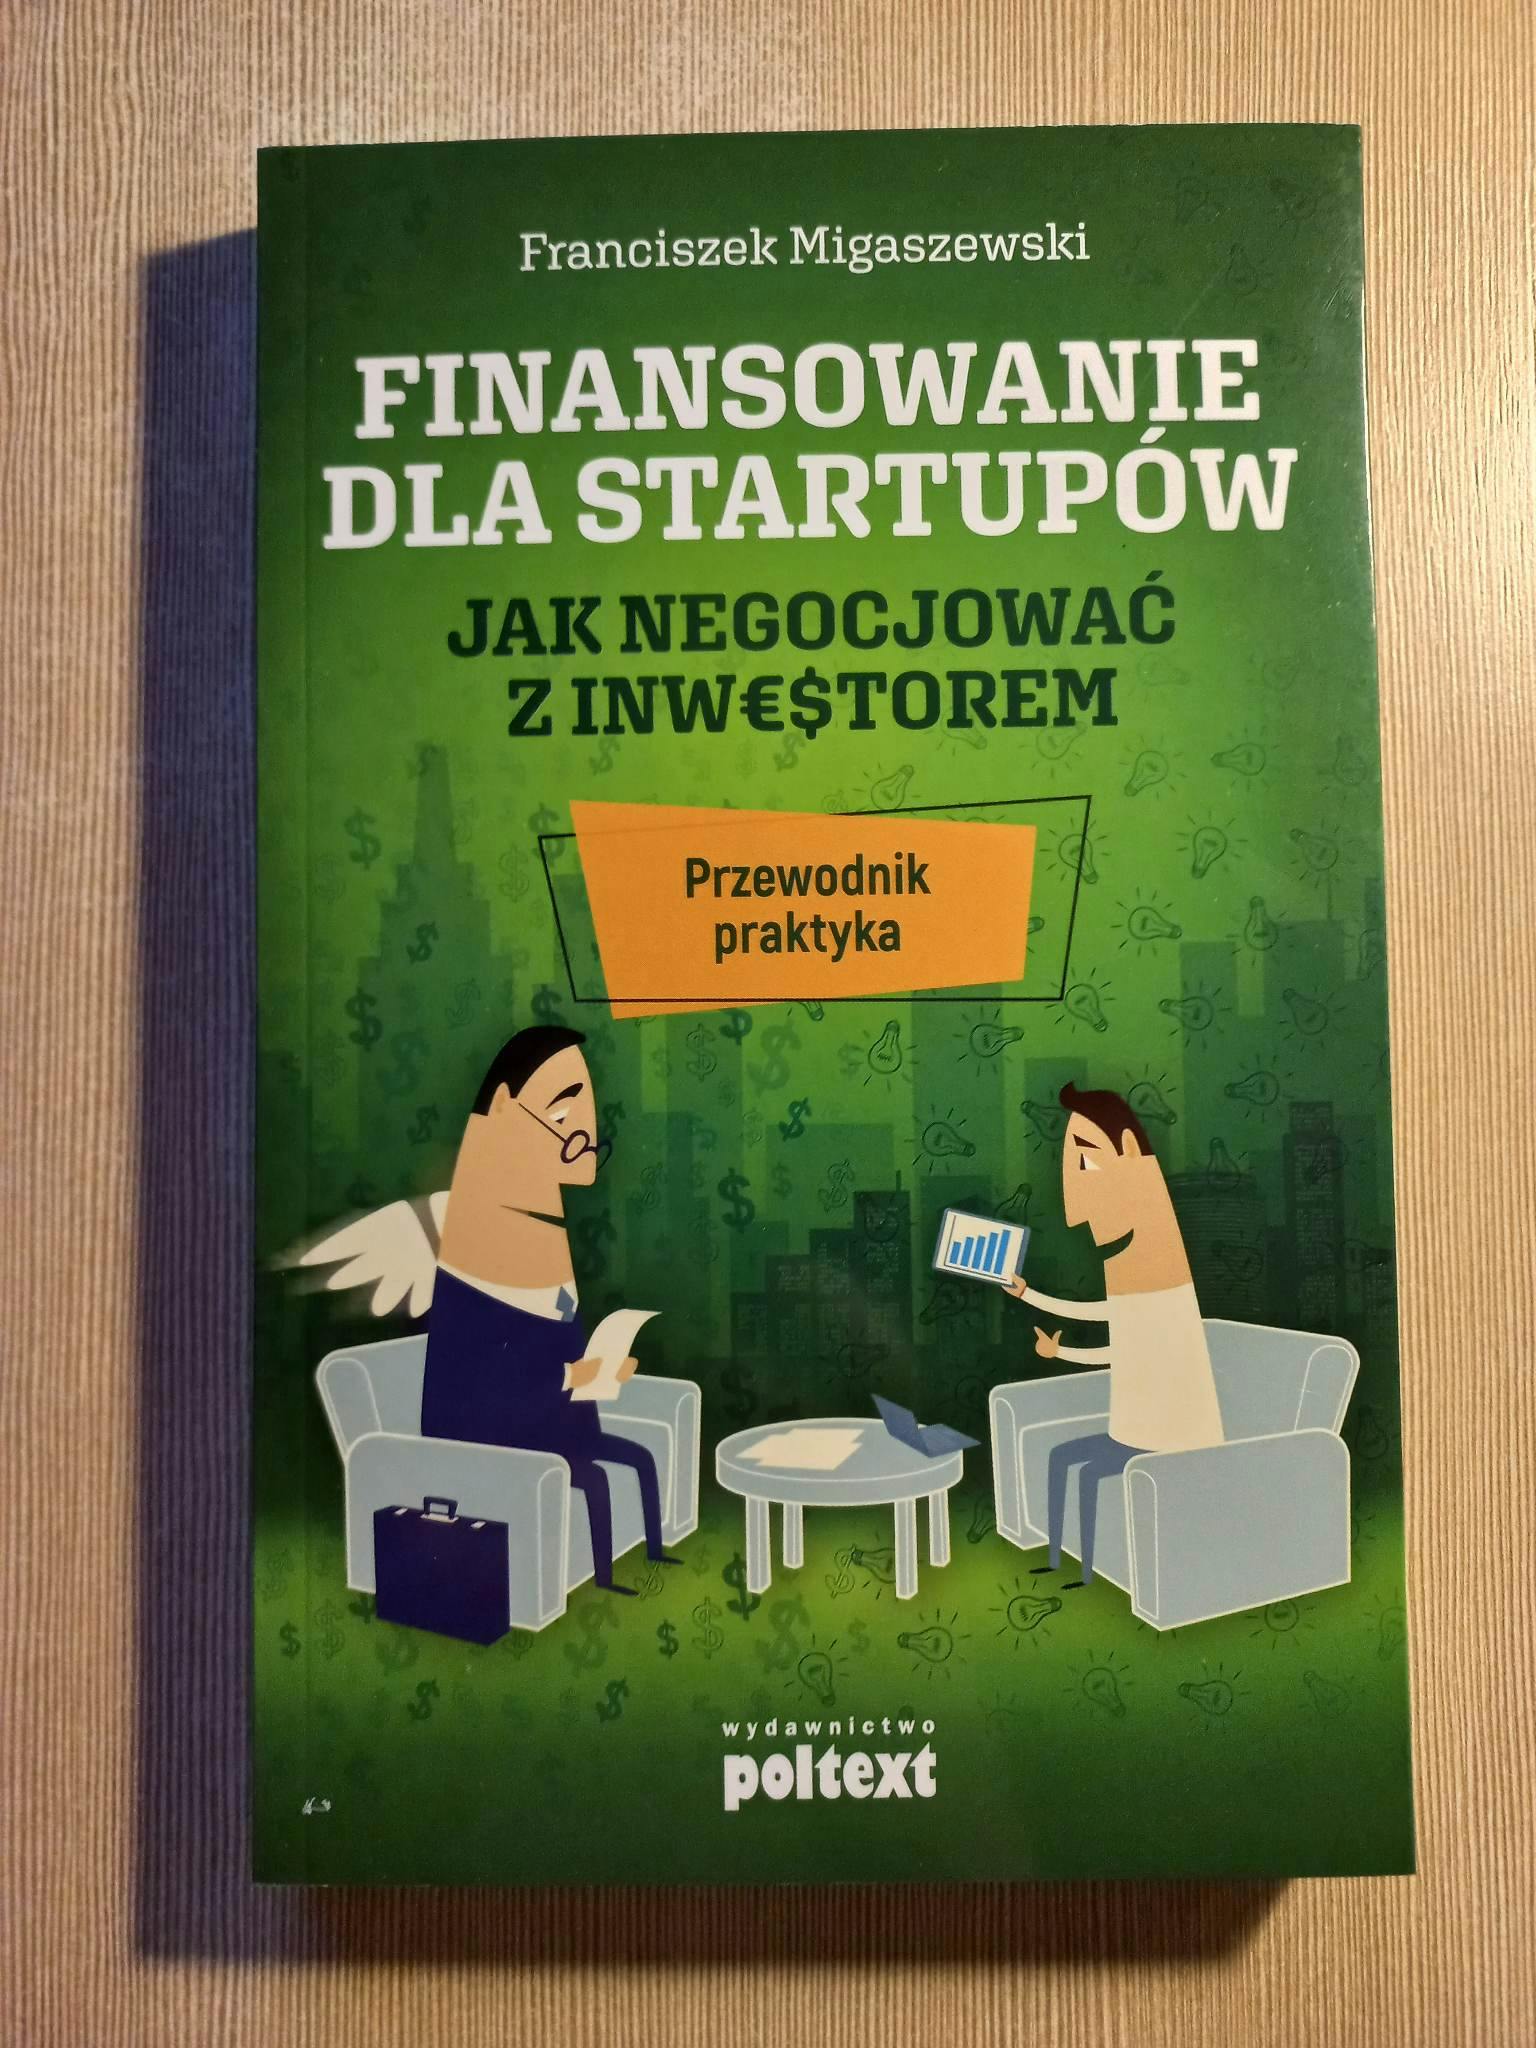 Picture of Finansowanie dla startupów 